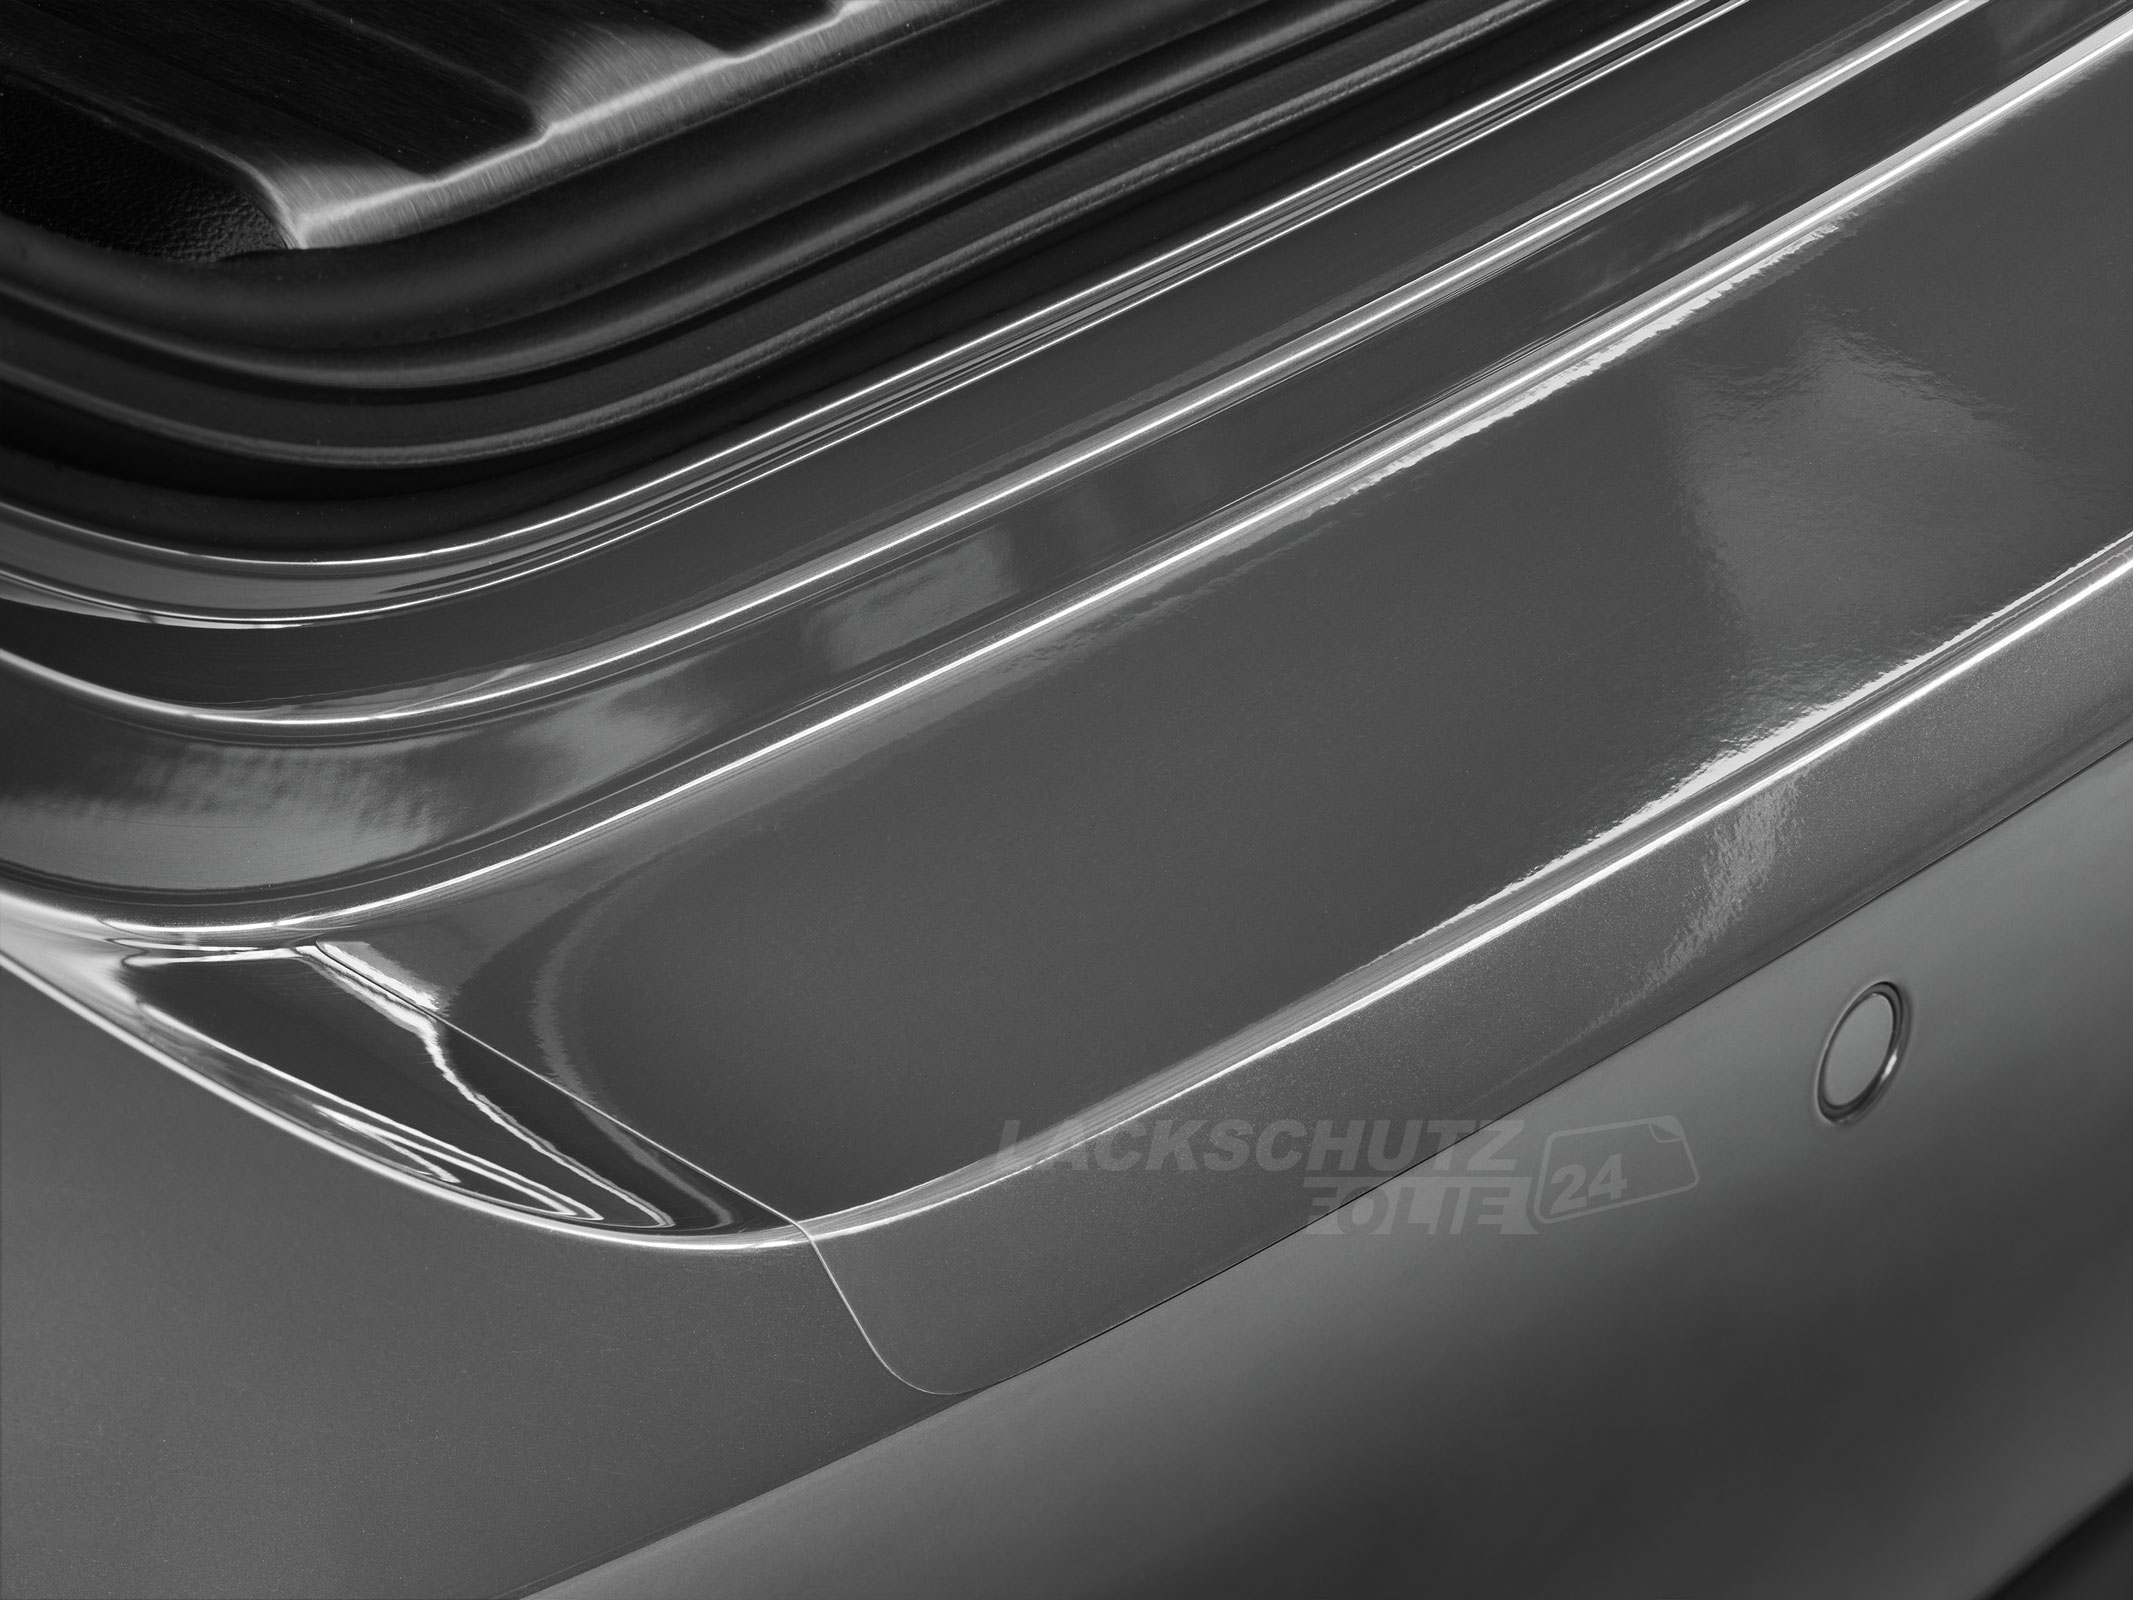 Ladekantenschutzfolie - Transparent Glatt Hochglänzend für Jaguar E-Pace Typ D180, ab BJ 01/2018